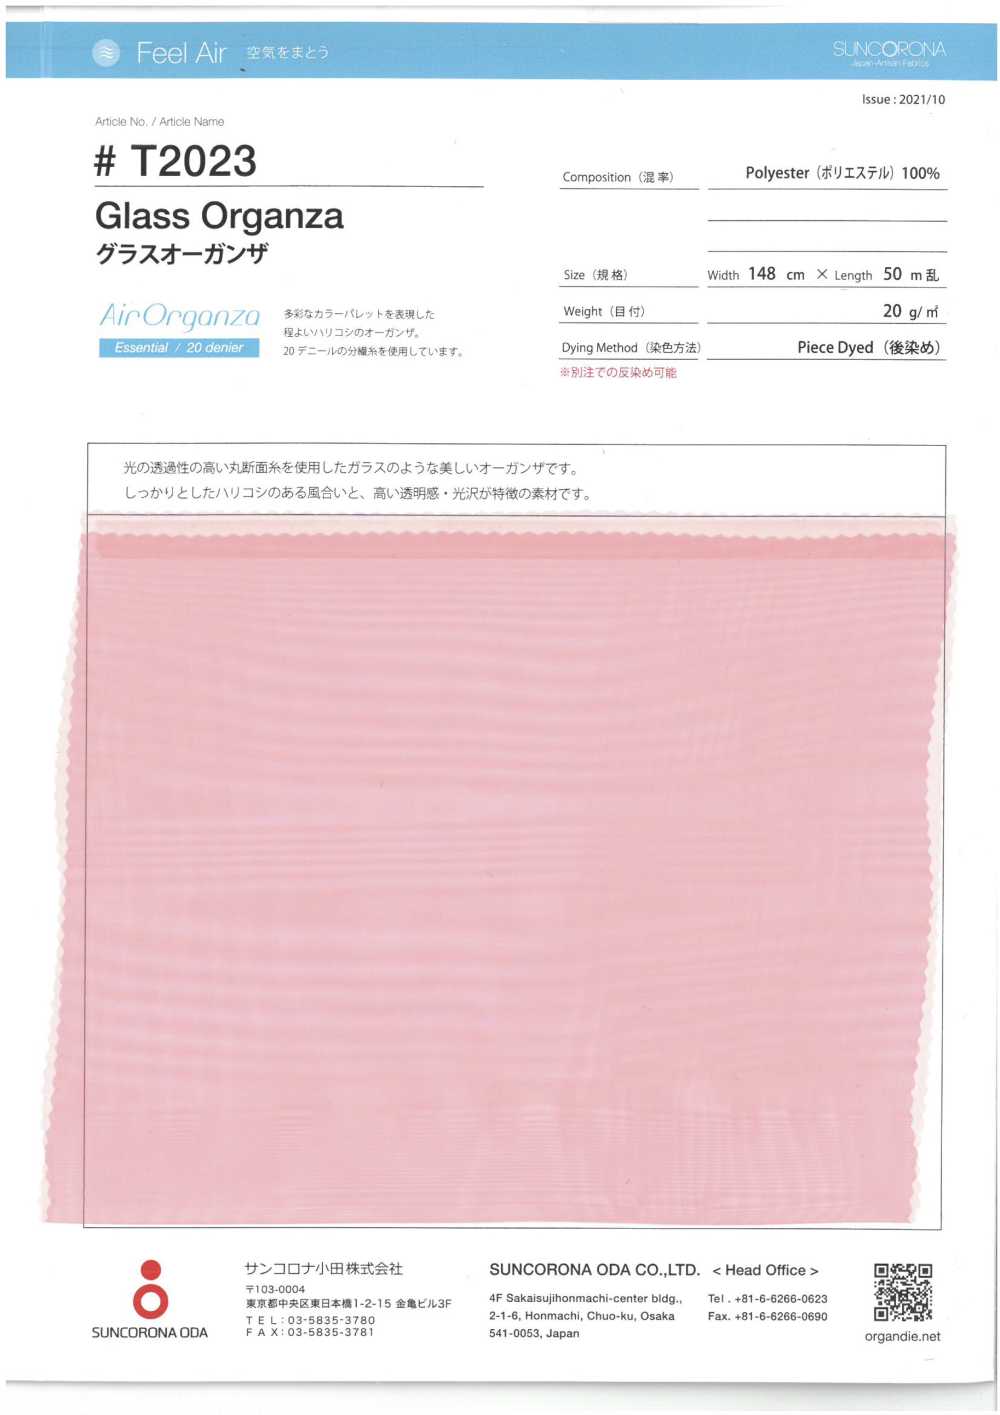 T2023 Cristal Organza[Fabrica Textil] Suncorona Oda